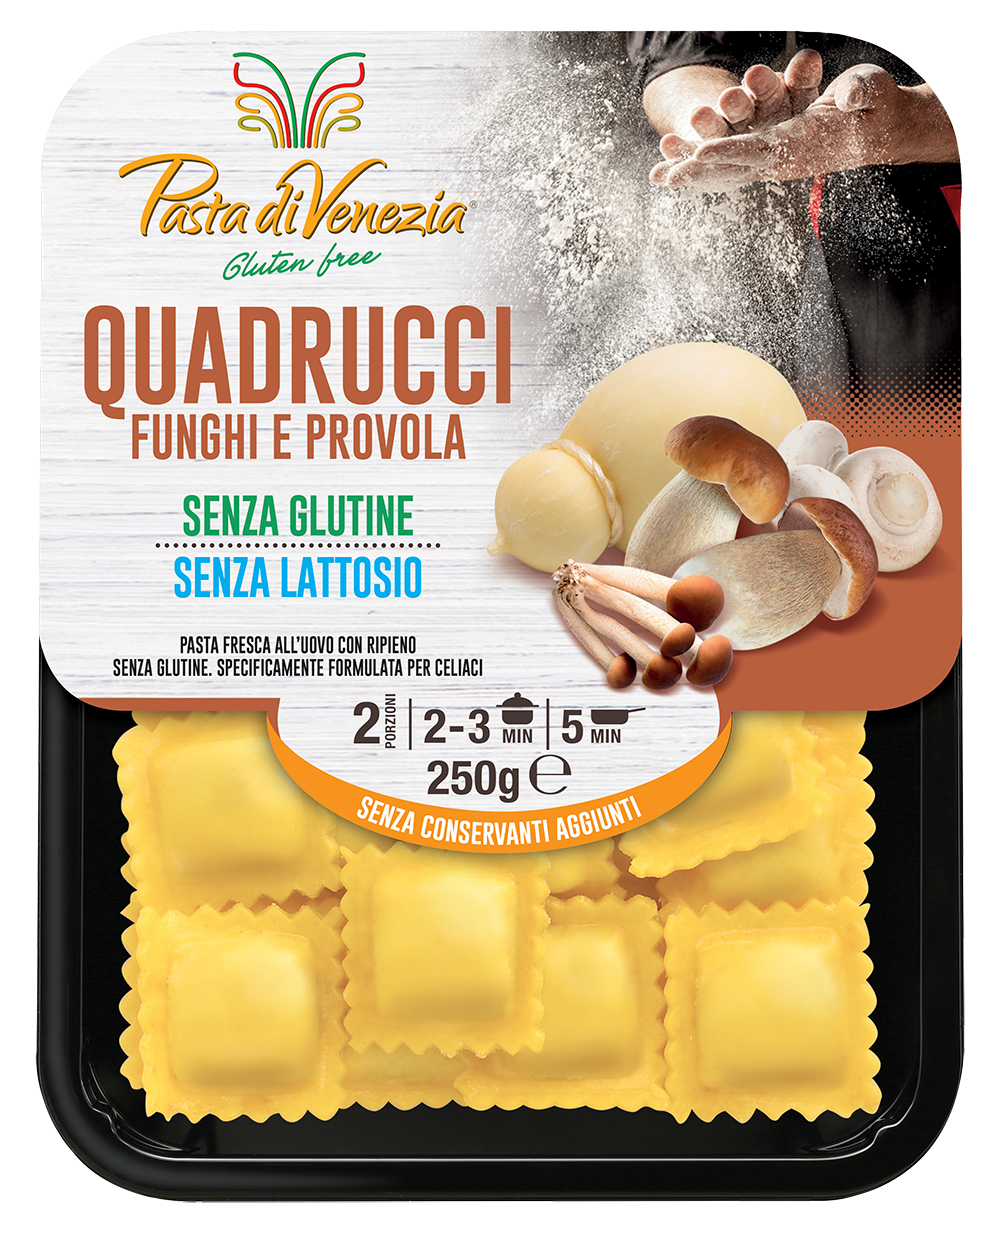 Pasta di Venezia Pasta Di Venezia Quadrucci Funghi e Provola 250GR